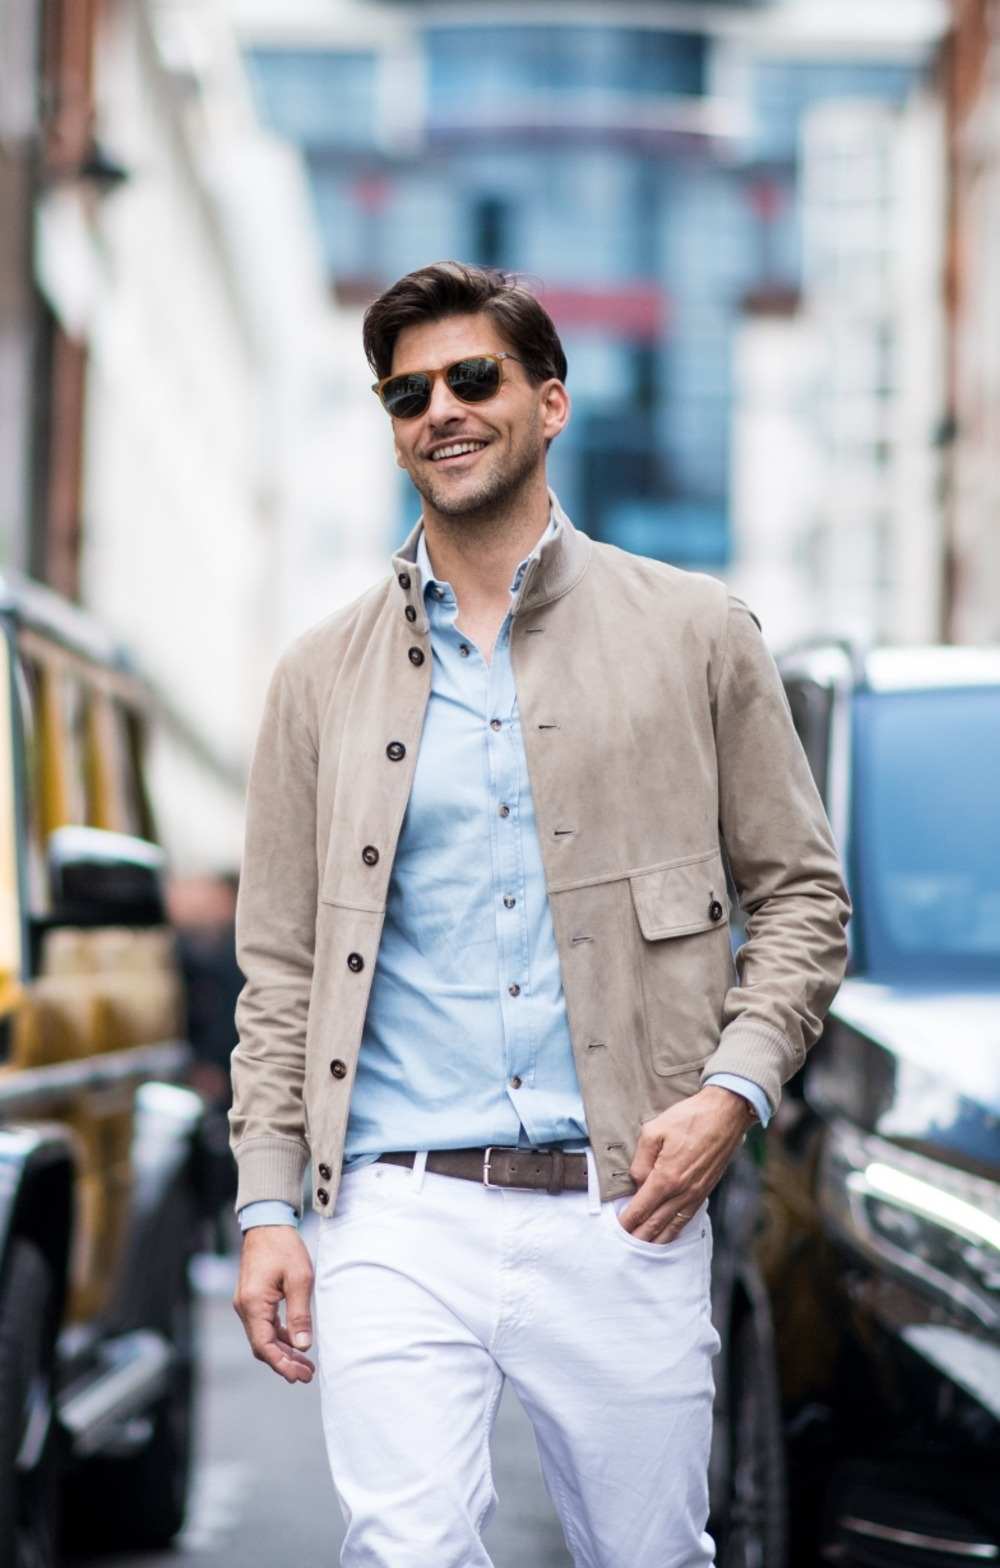 freizeitkleidung mit hellen farbtönen bestehend aus beigefarbener jacke hellblauem freizeithemd und weißer jeanshose mit ledergürtel